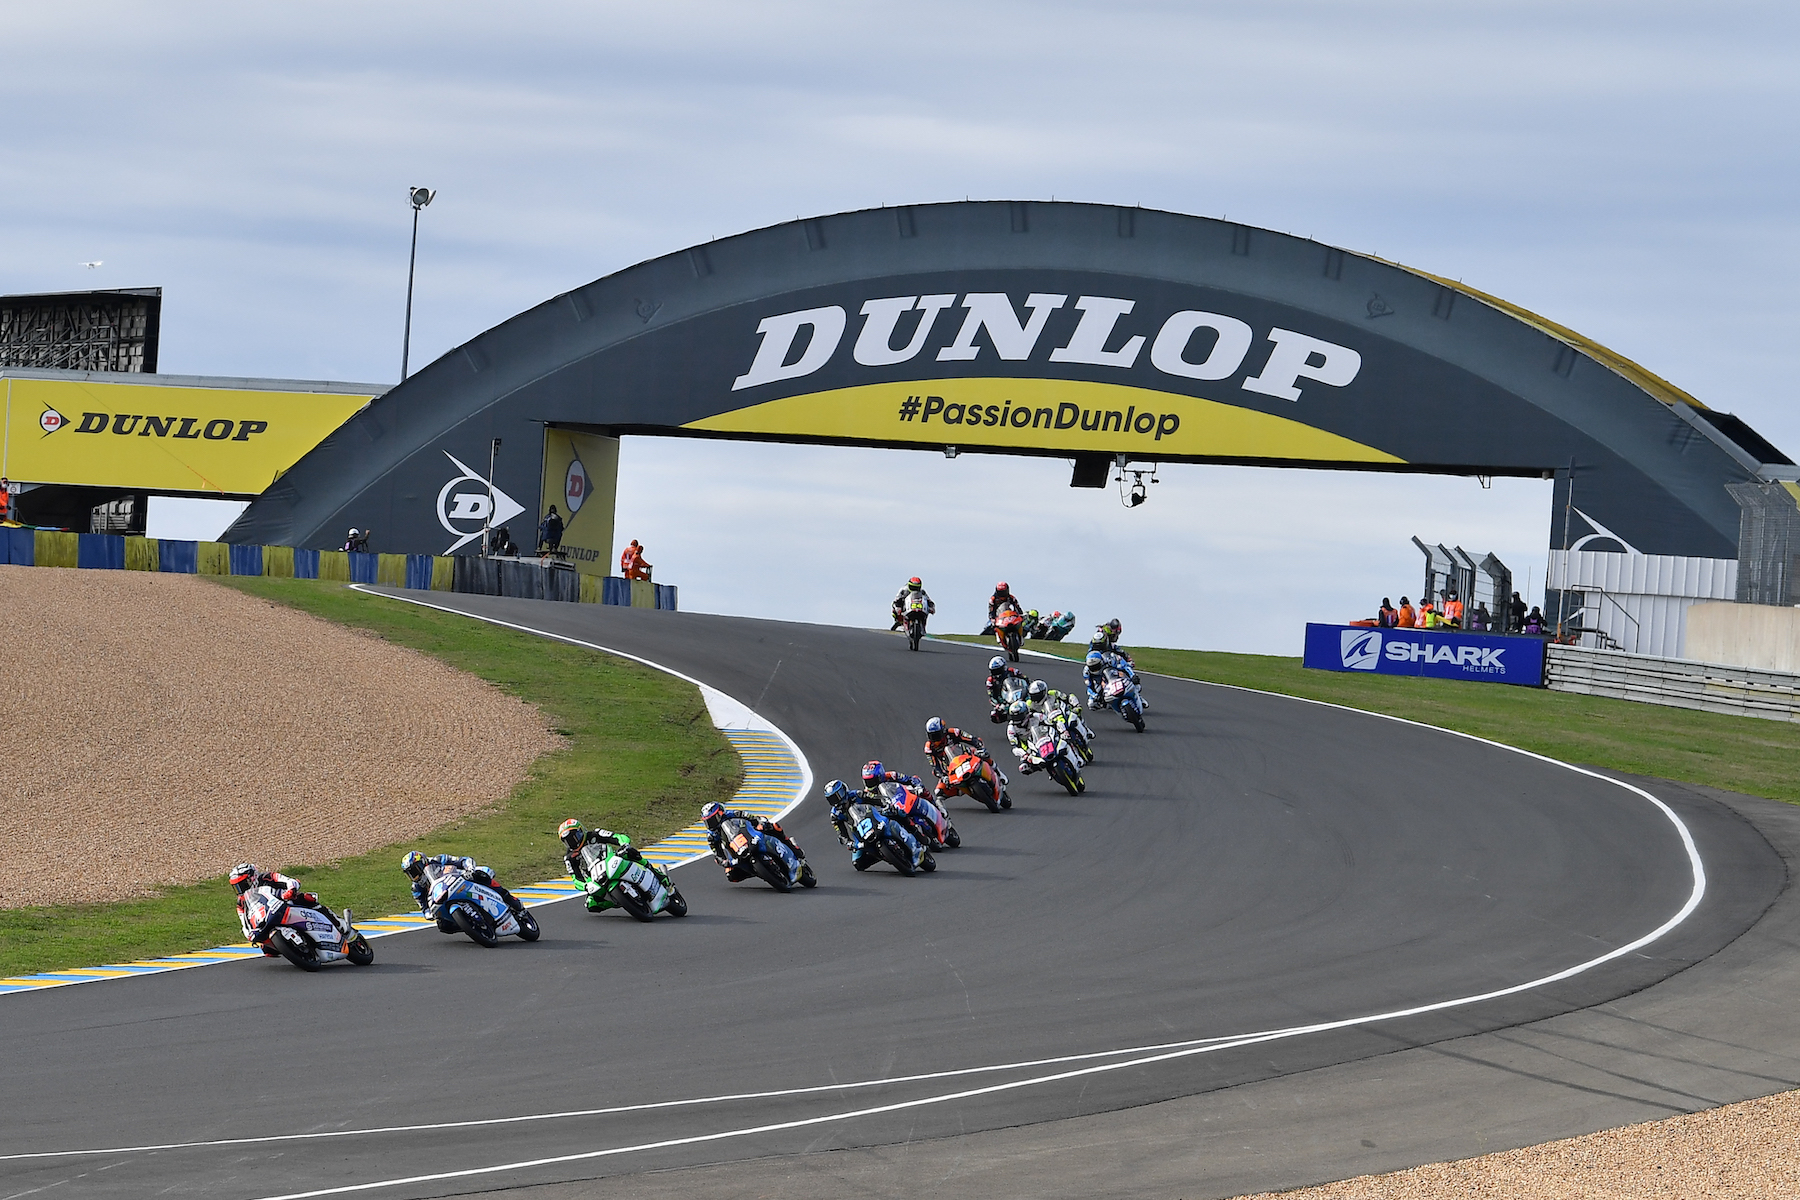 Dunlop prodlužuje exkluzivitu jako dodavatel pneu pro Moto2 a Moto3 do roku 2023